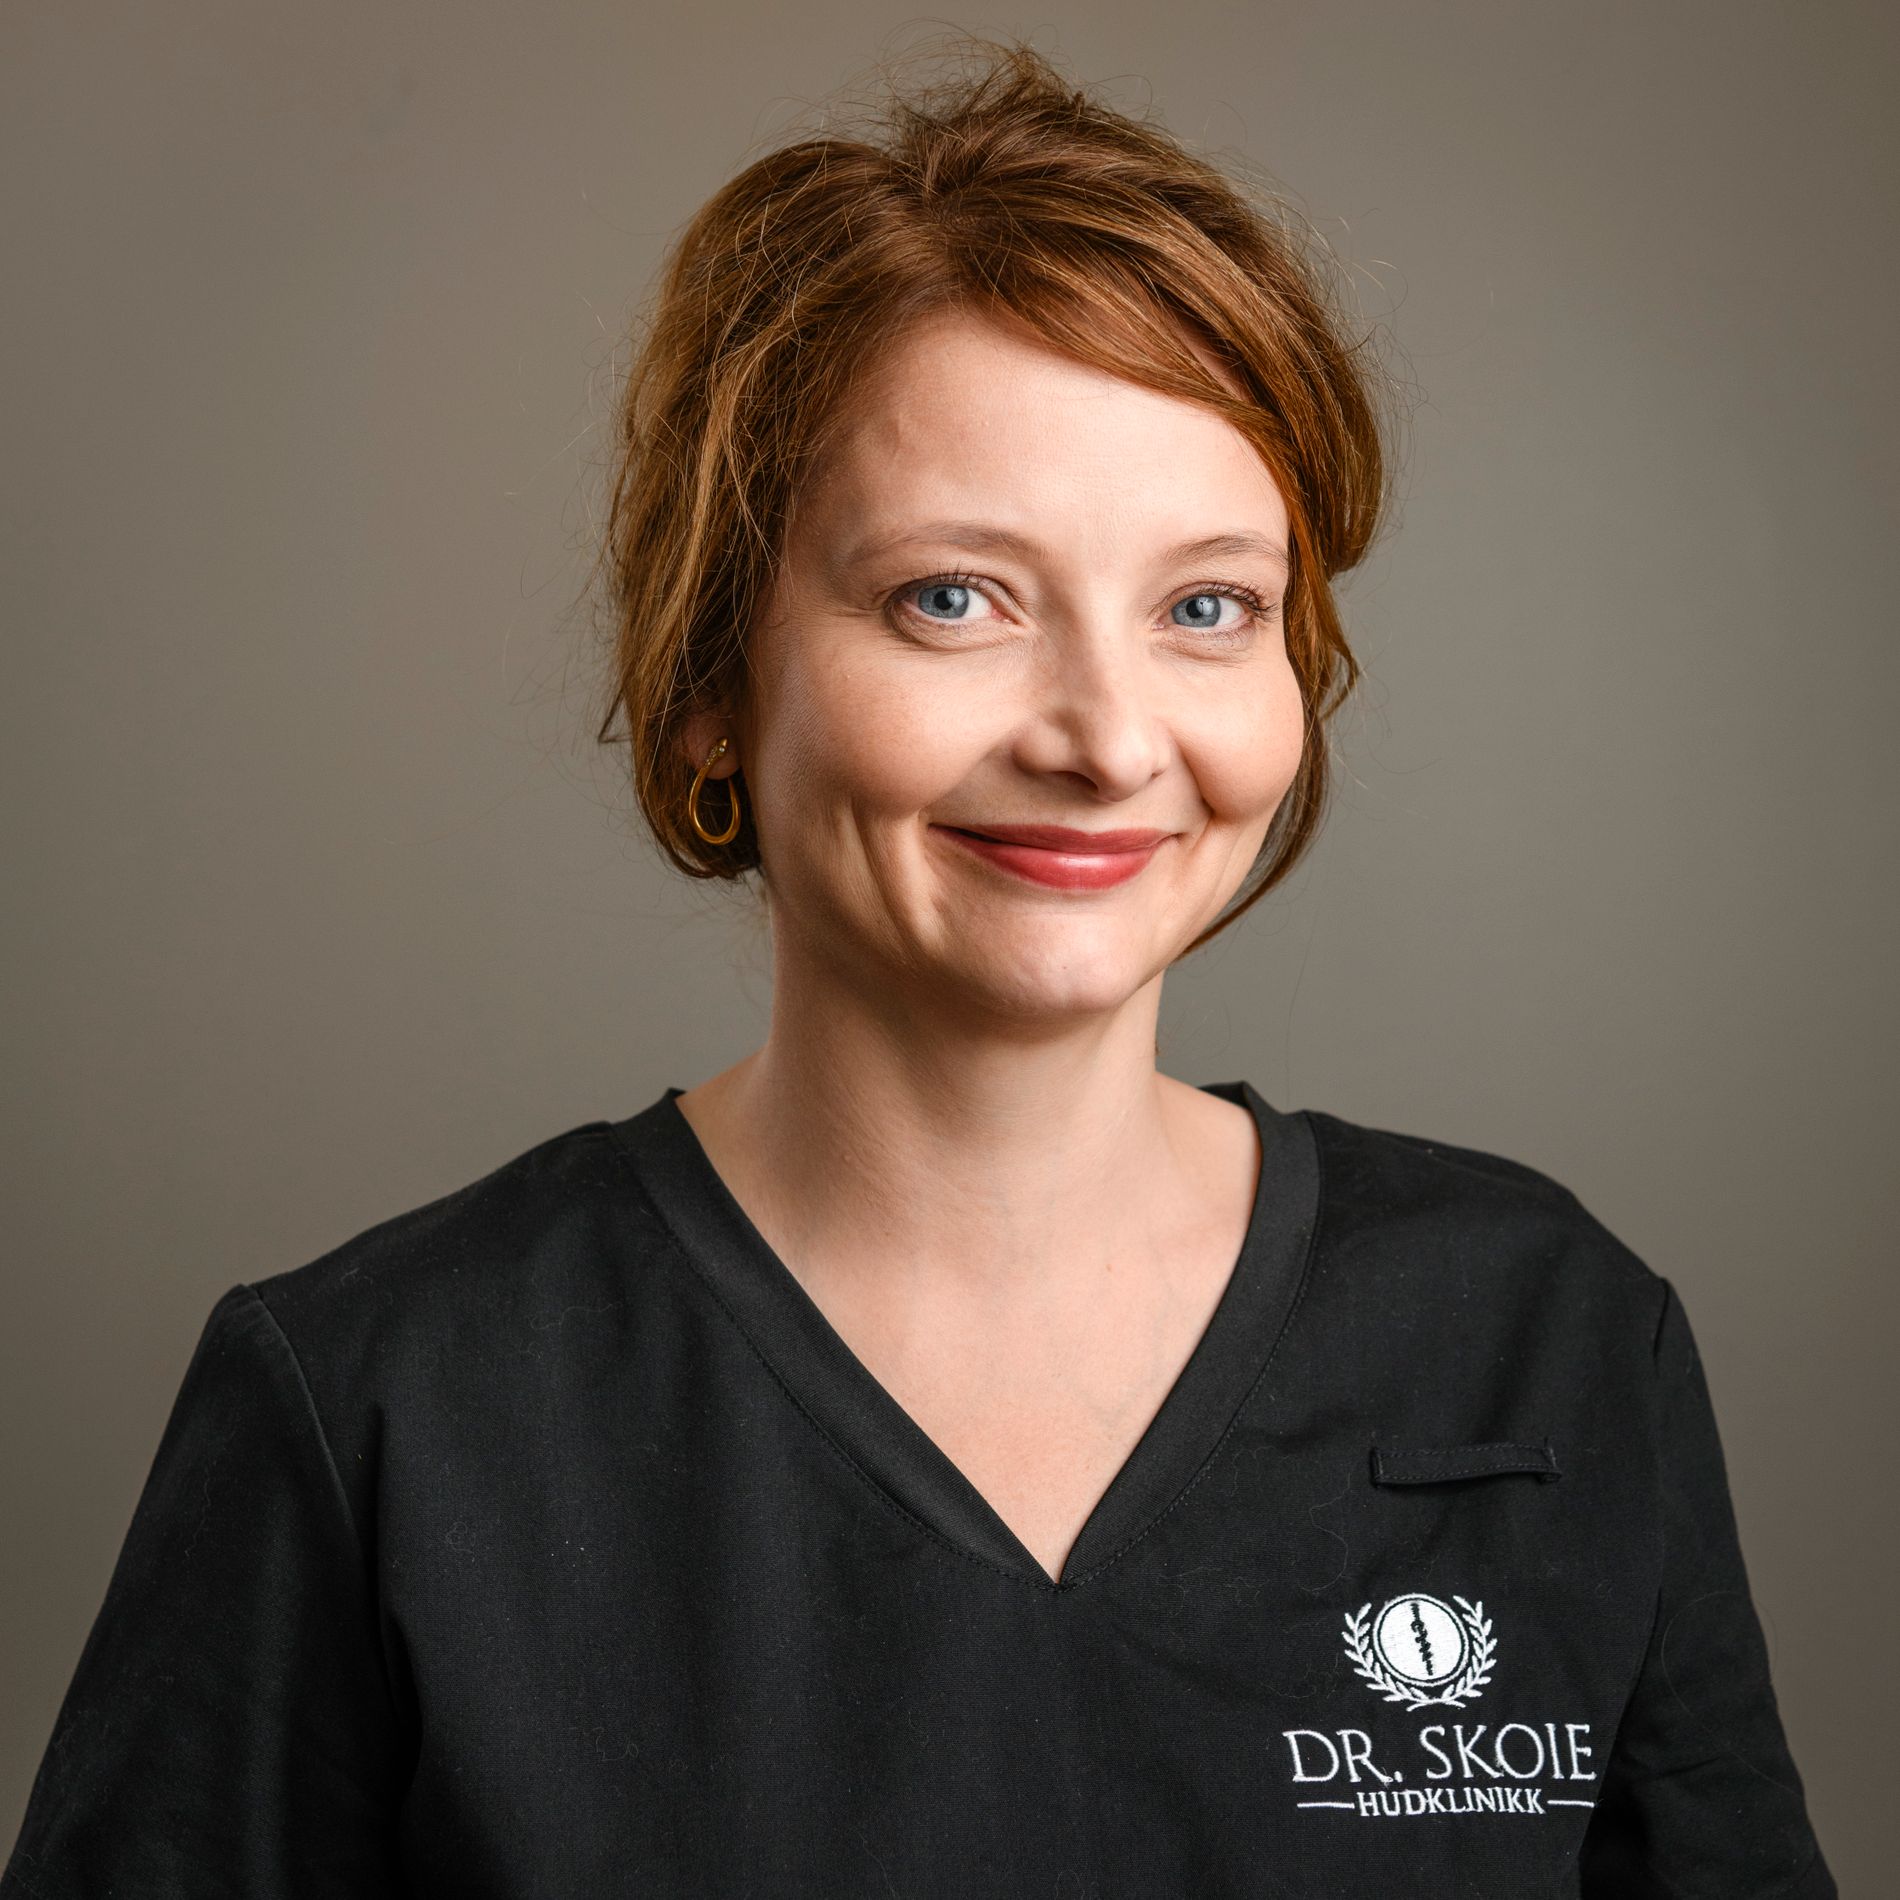 Inger Marie Skoie er spesialist i hud- og veneriske sykdommer.